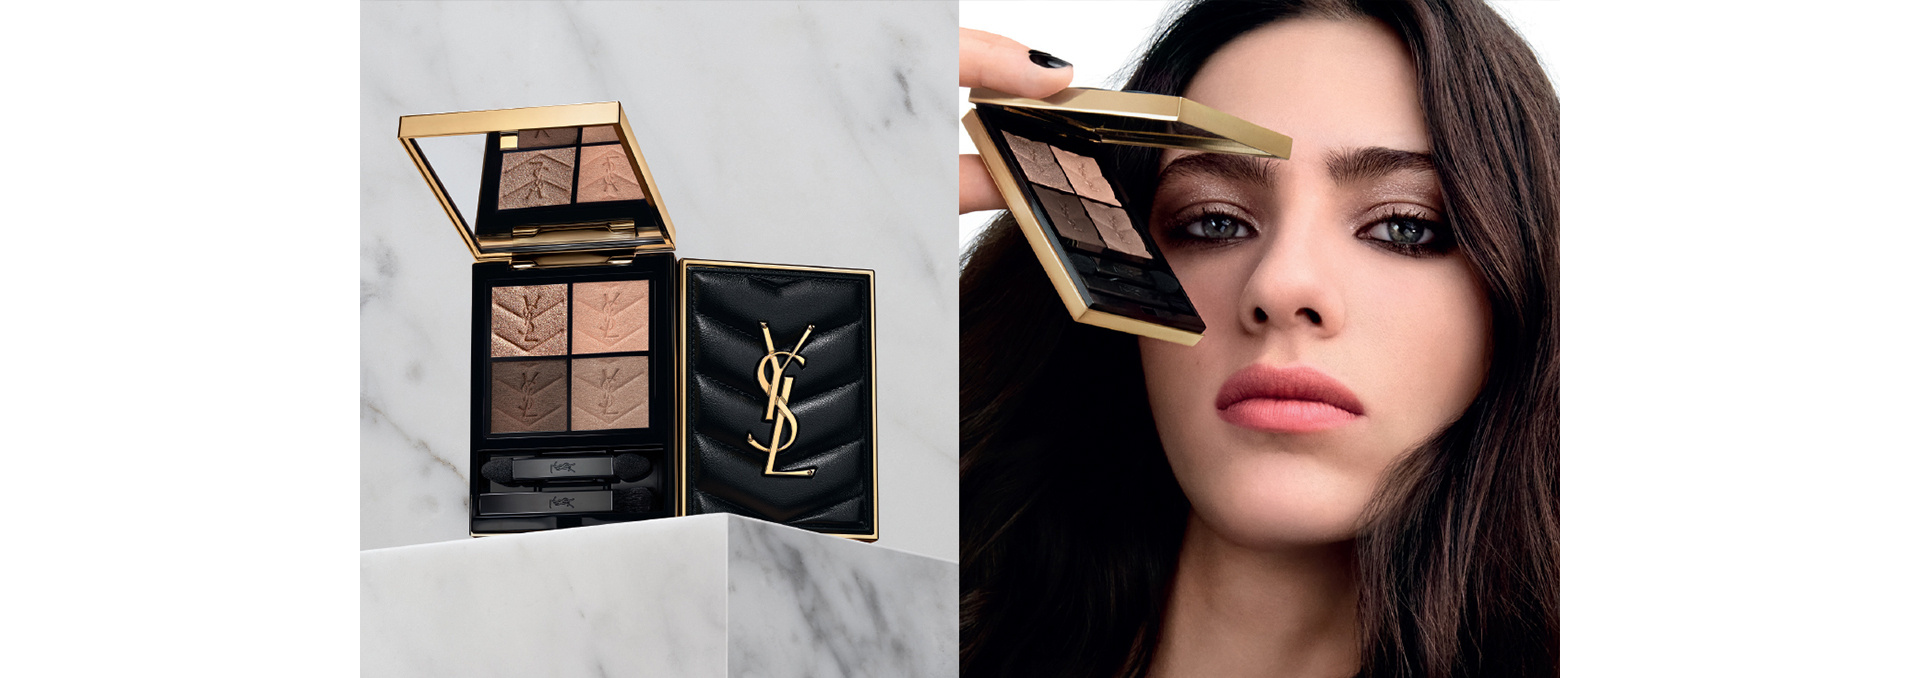 Yves Saint Laurent cosmetic bag  Black makeup bag, Yves saint laurent  bags, Pink makeup bag